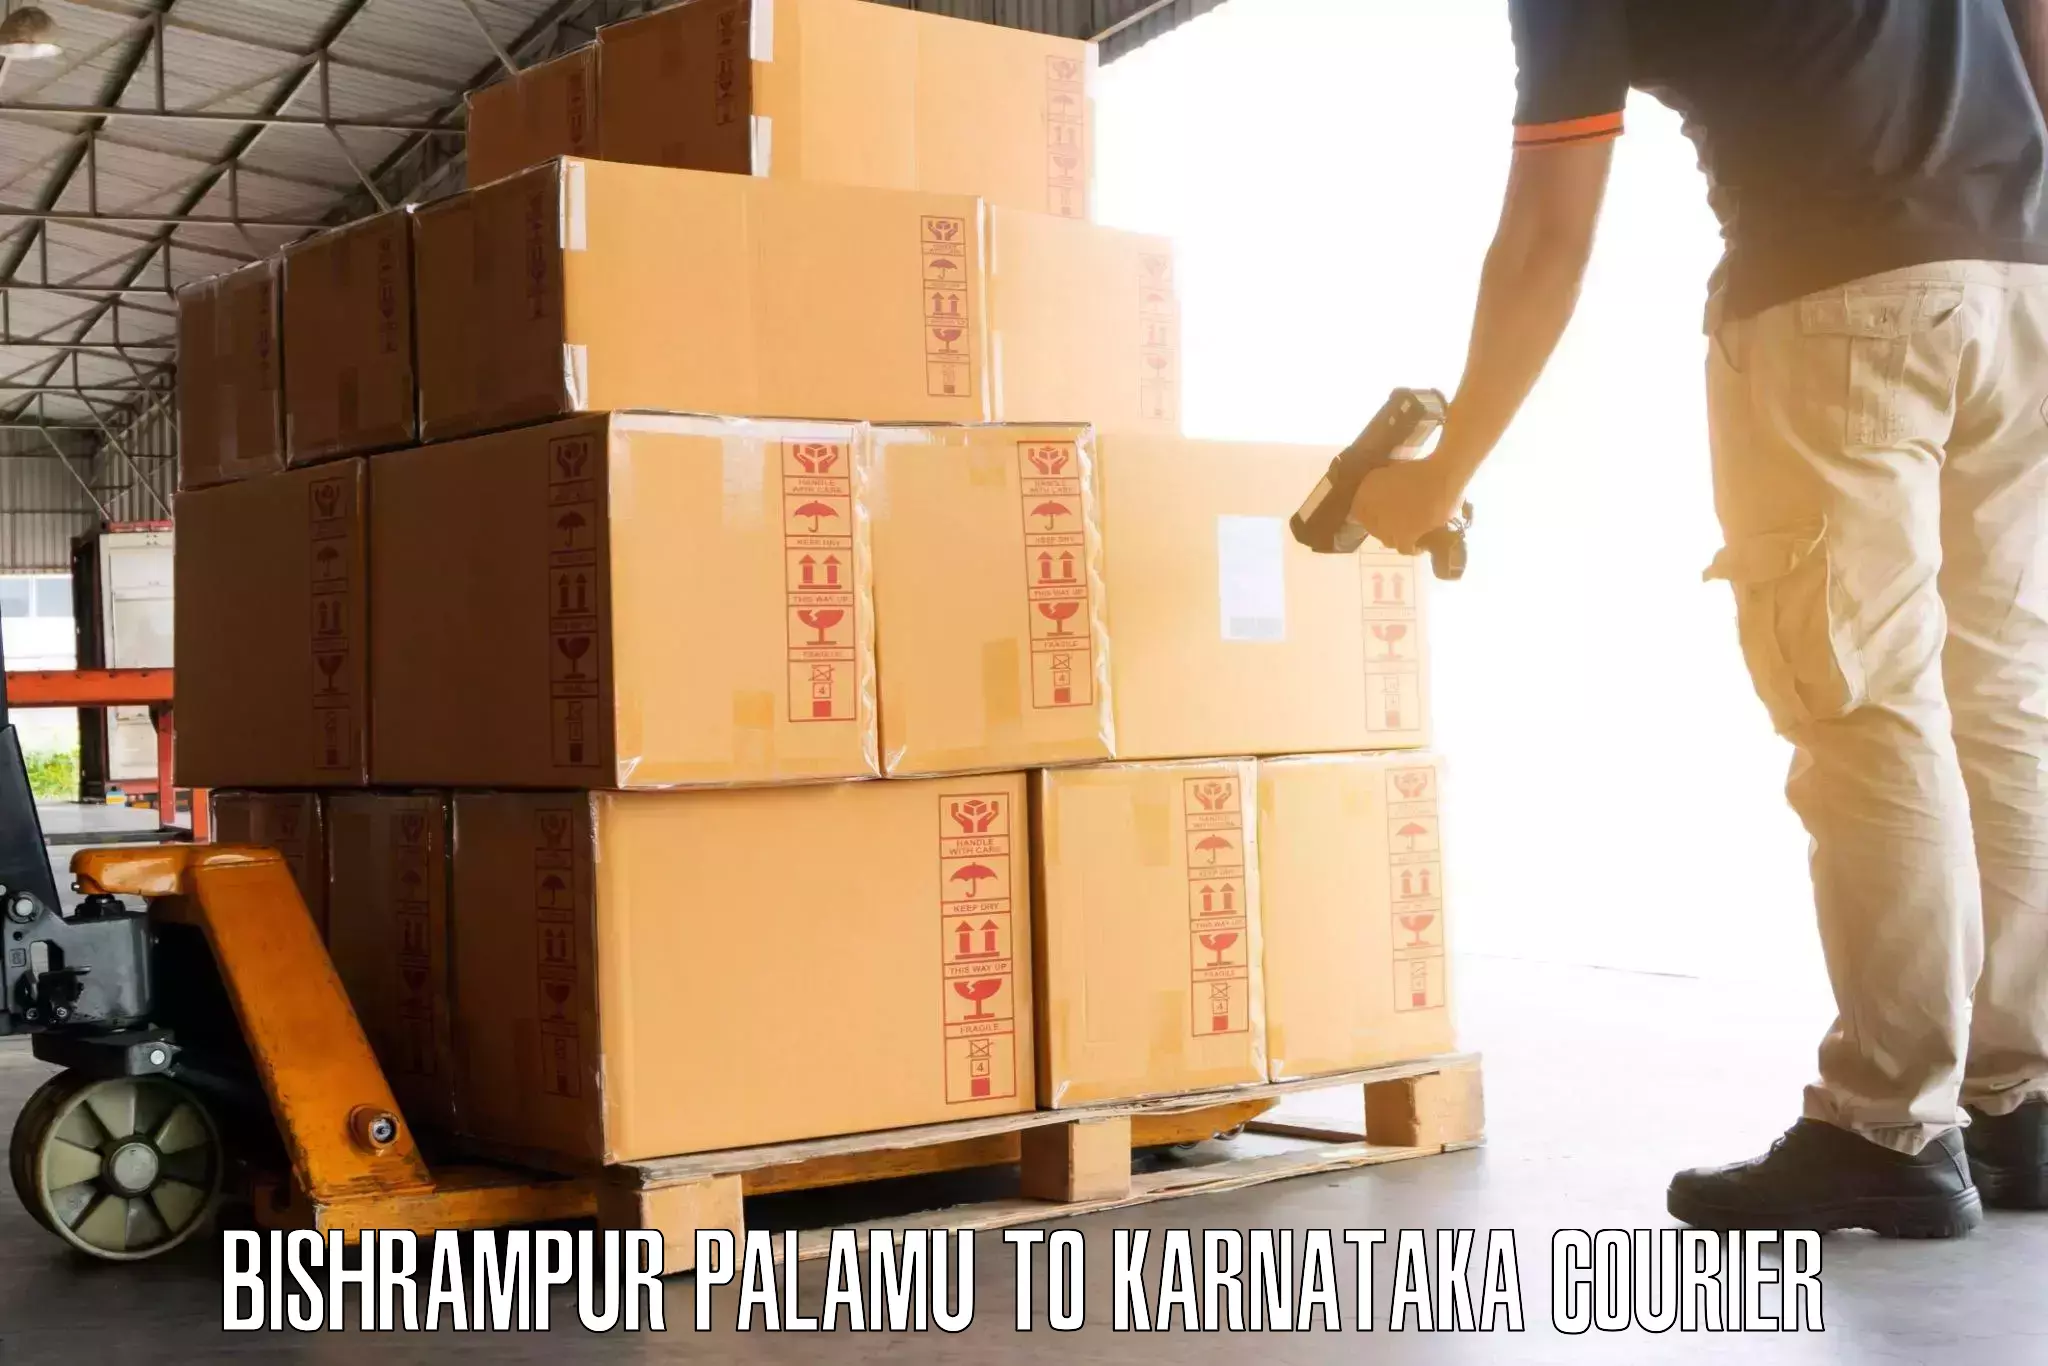 Baggage shipping service Bishrampur Palamu to Kalaburagi